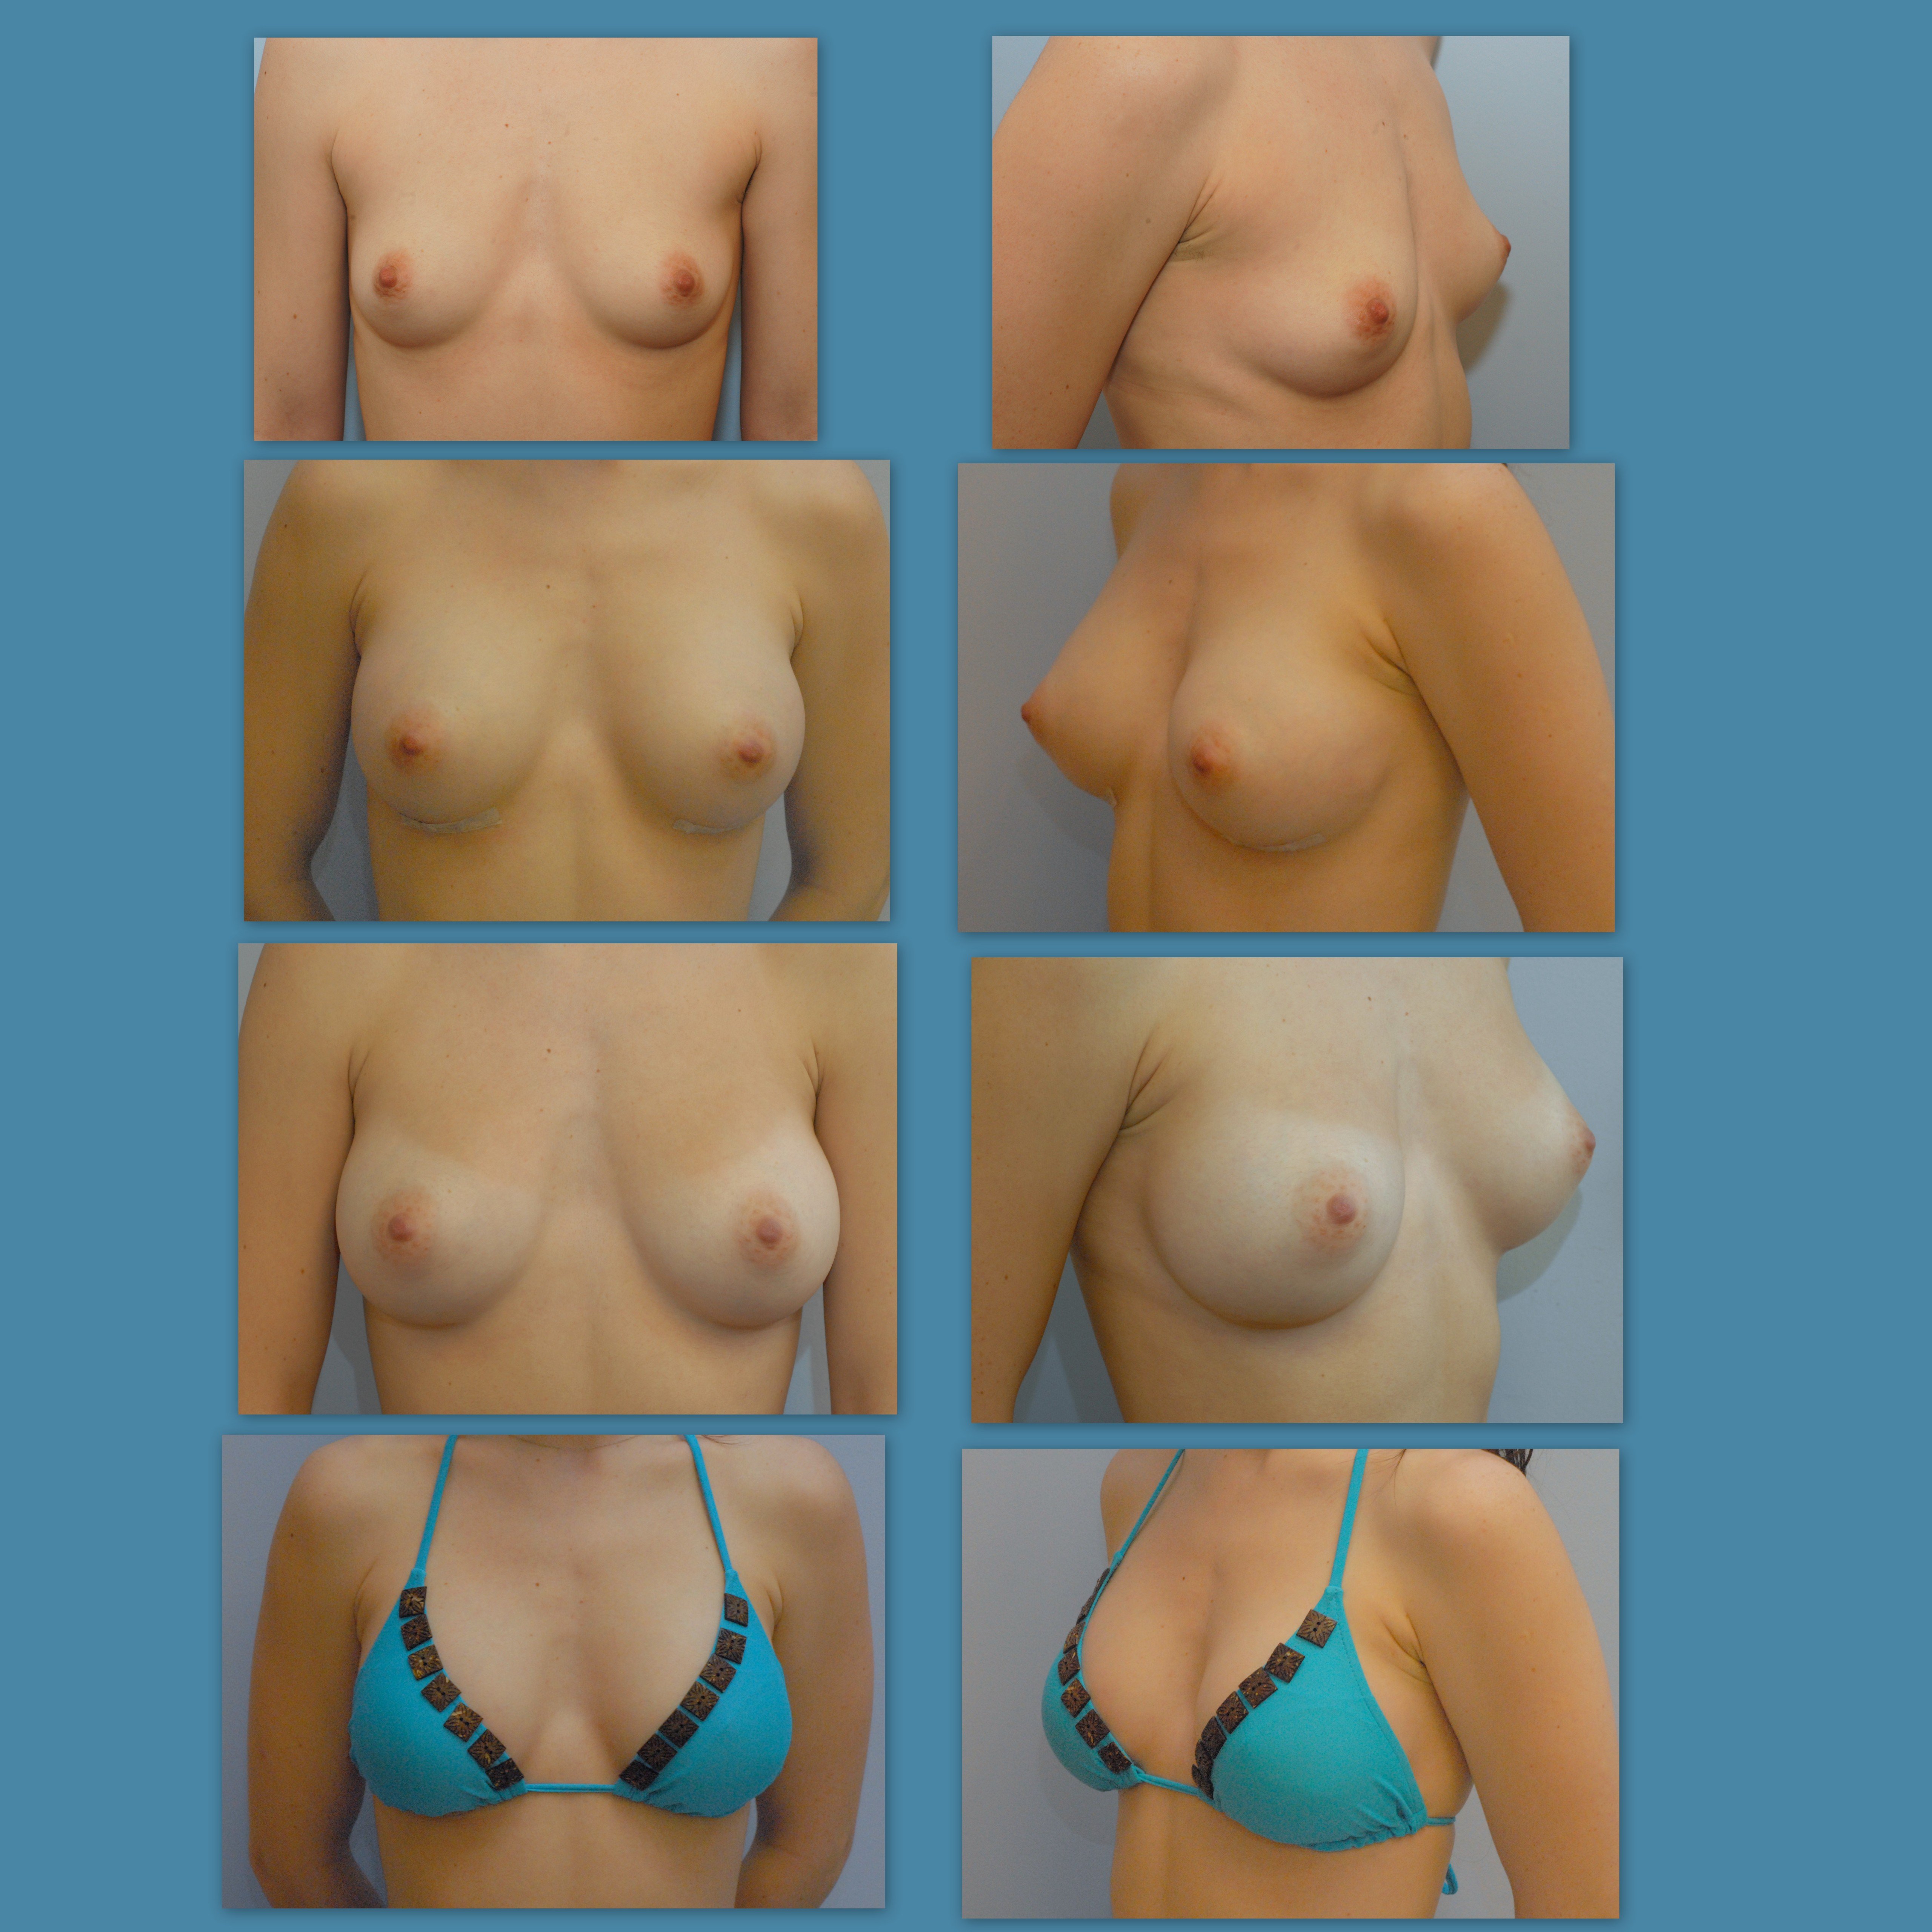 примеры груди разных размеров фото 82